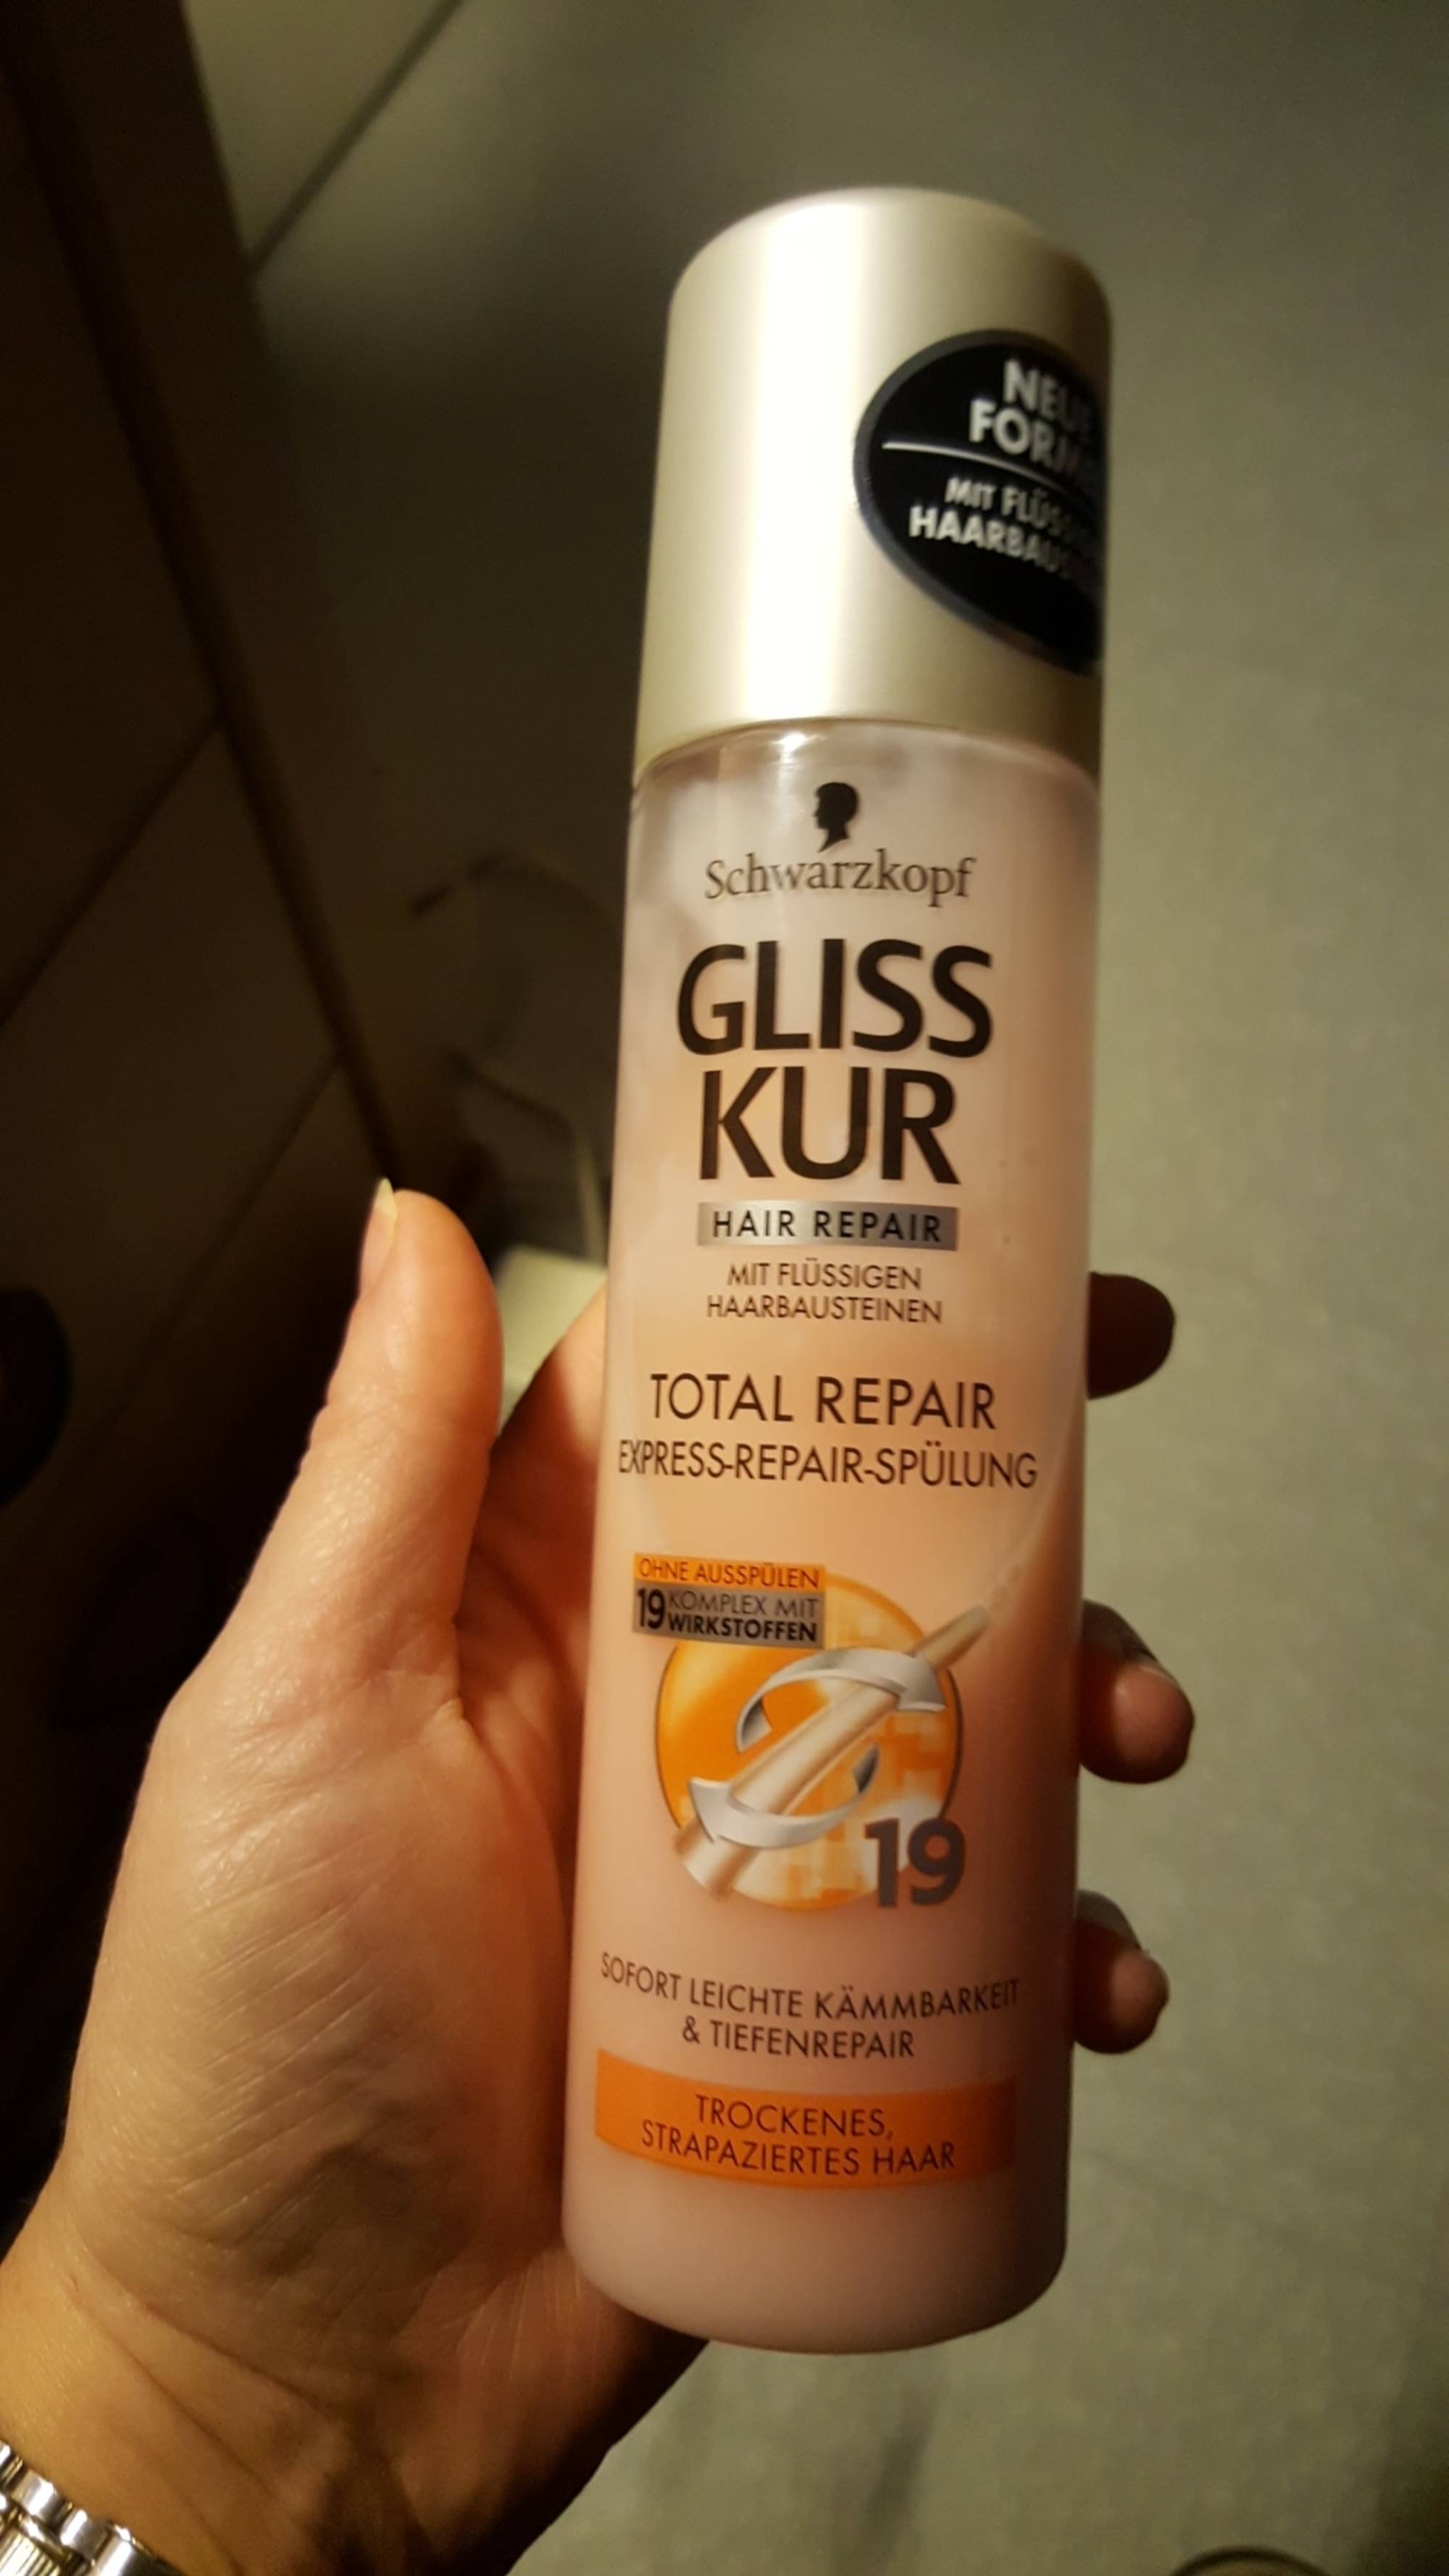 SCHWARZKOPF - Gliss kur hair repair - Total repair